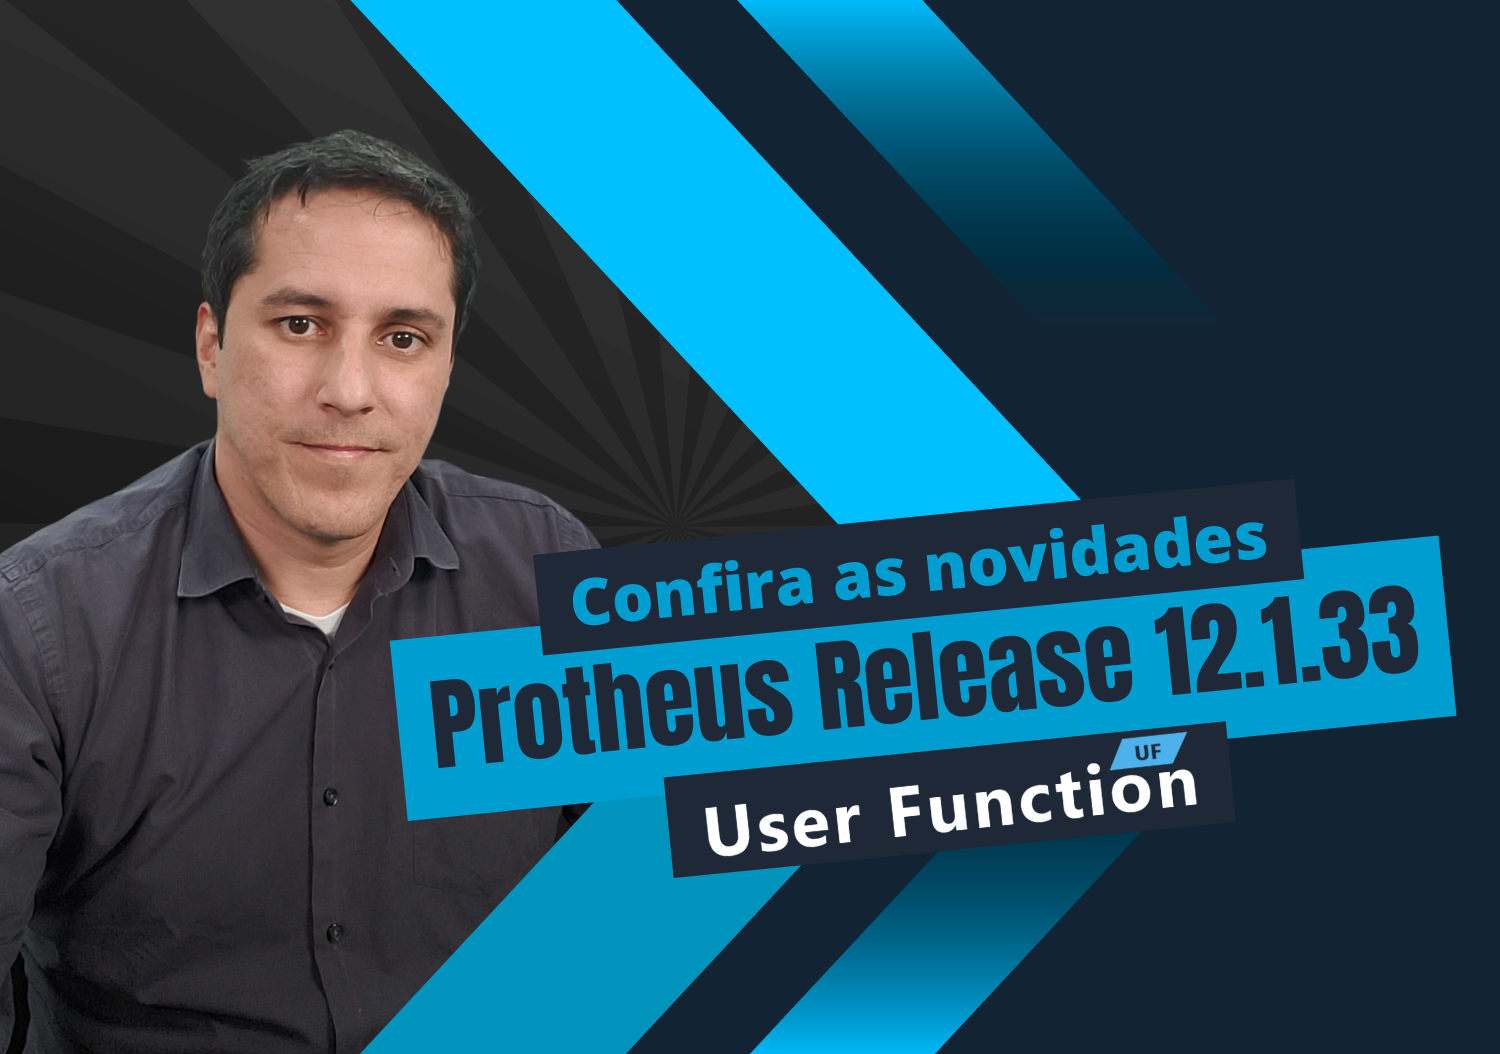 Protheus Release 12.1.33 - Confira as novidades